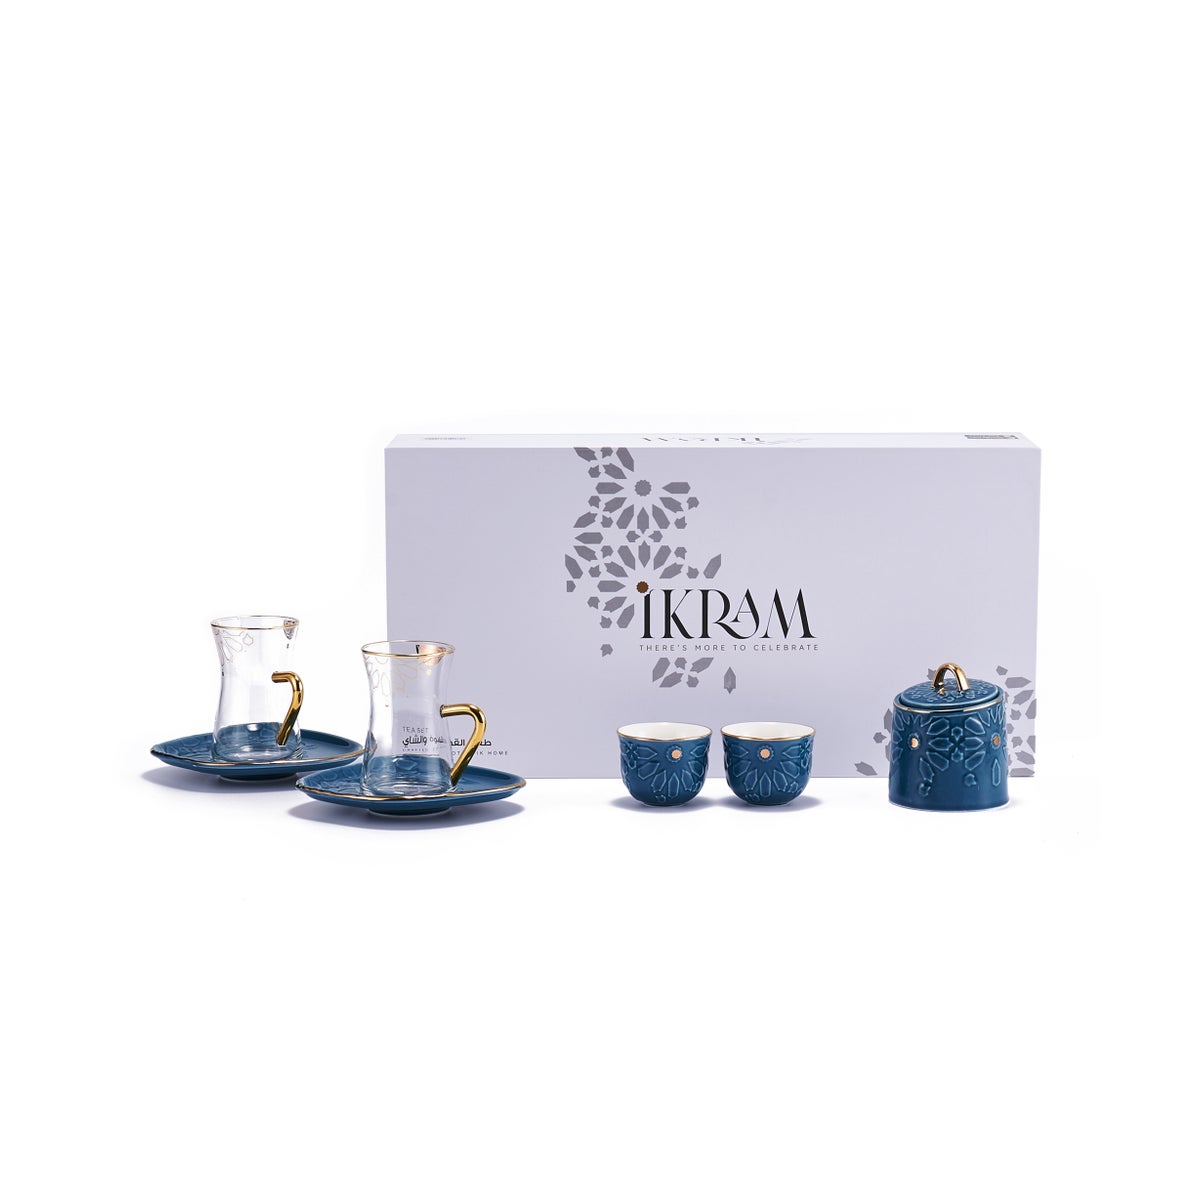 19pcs tea set ( 6 glass 6saucer 6 cawa 1 sugar) - Blue